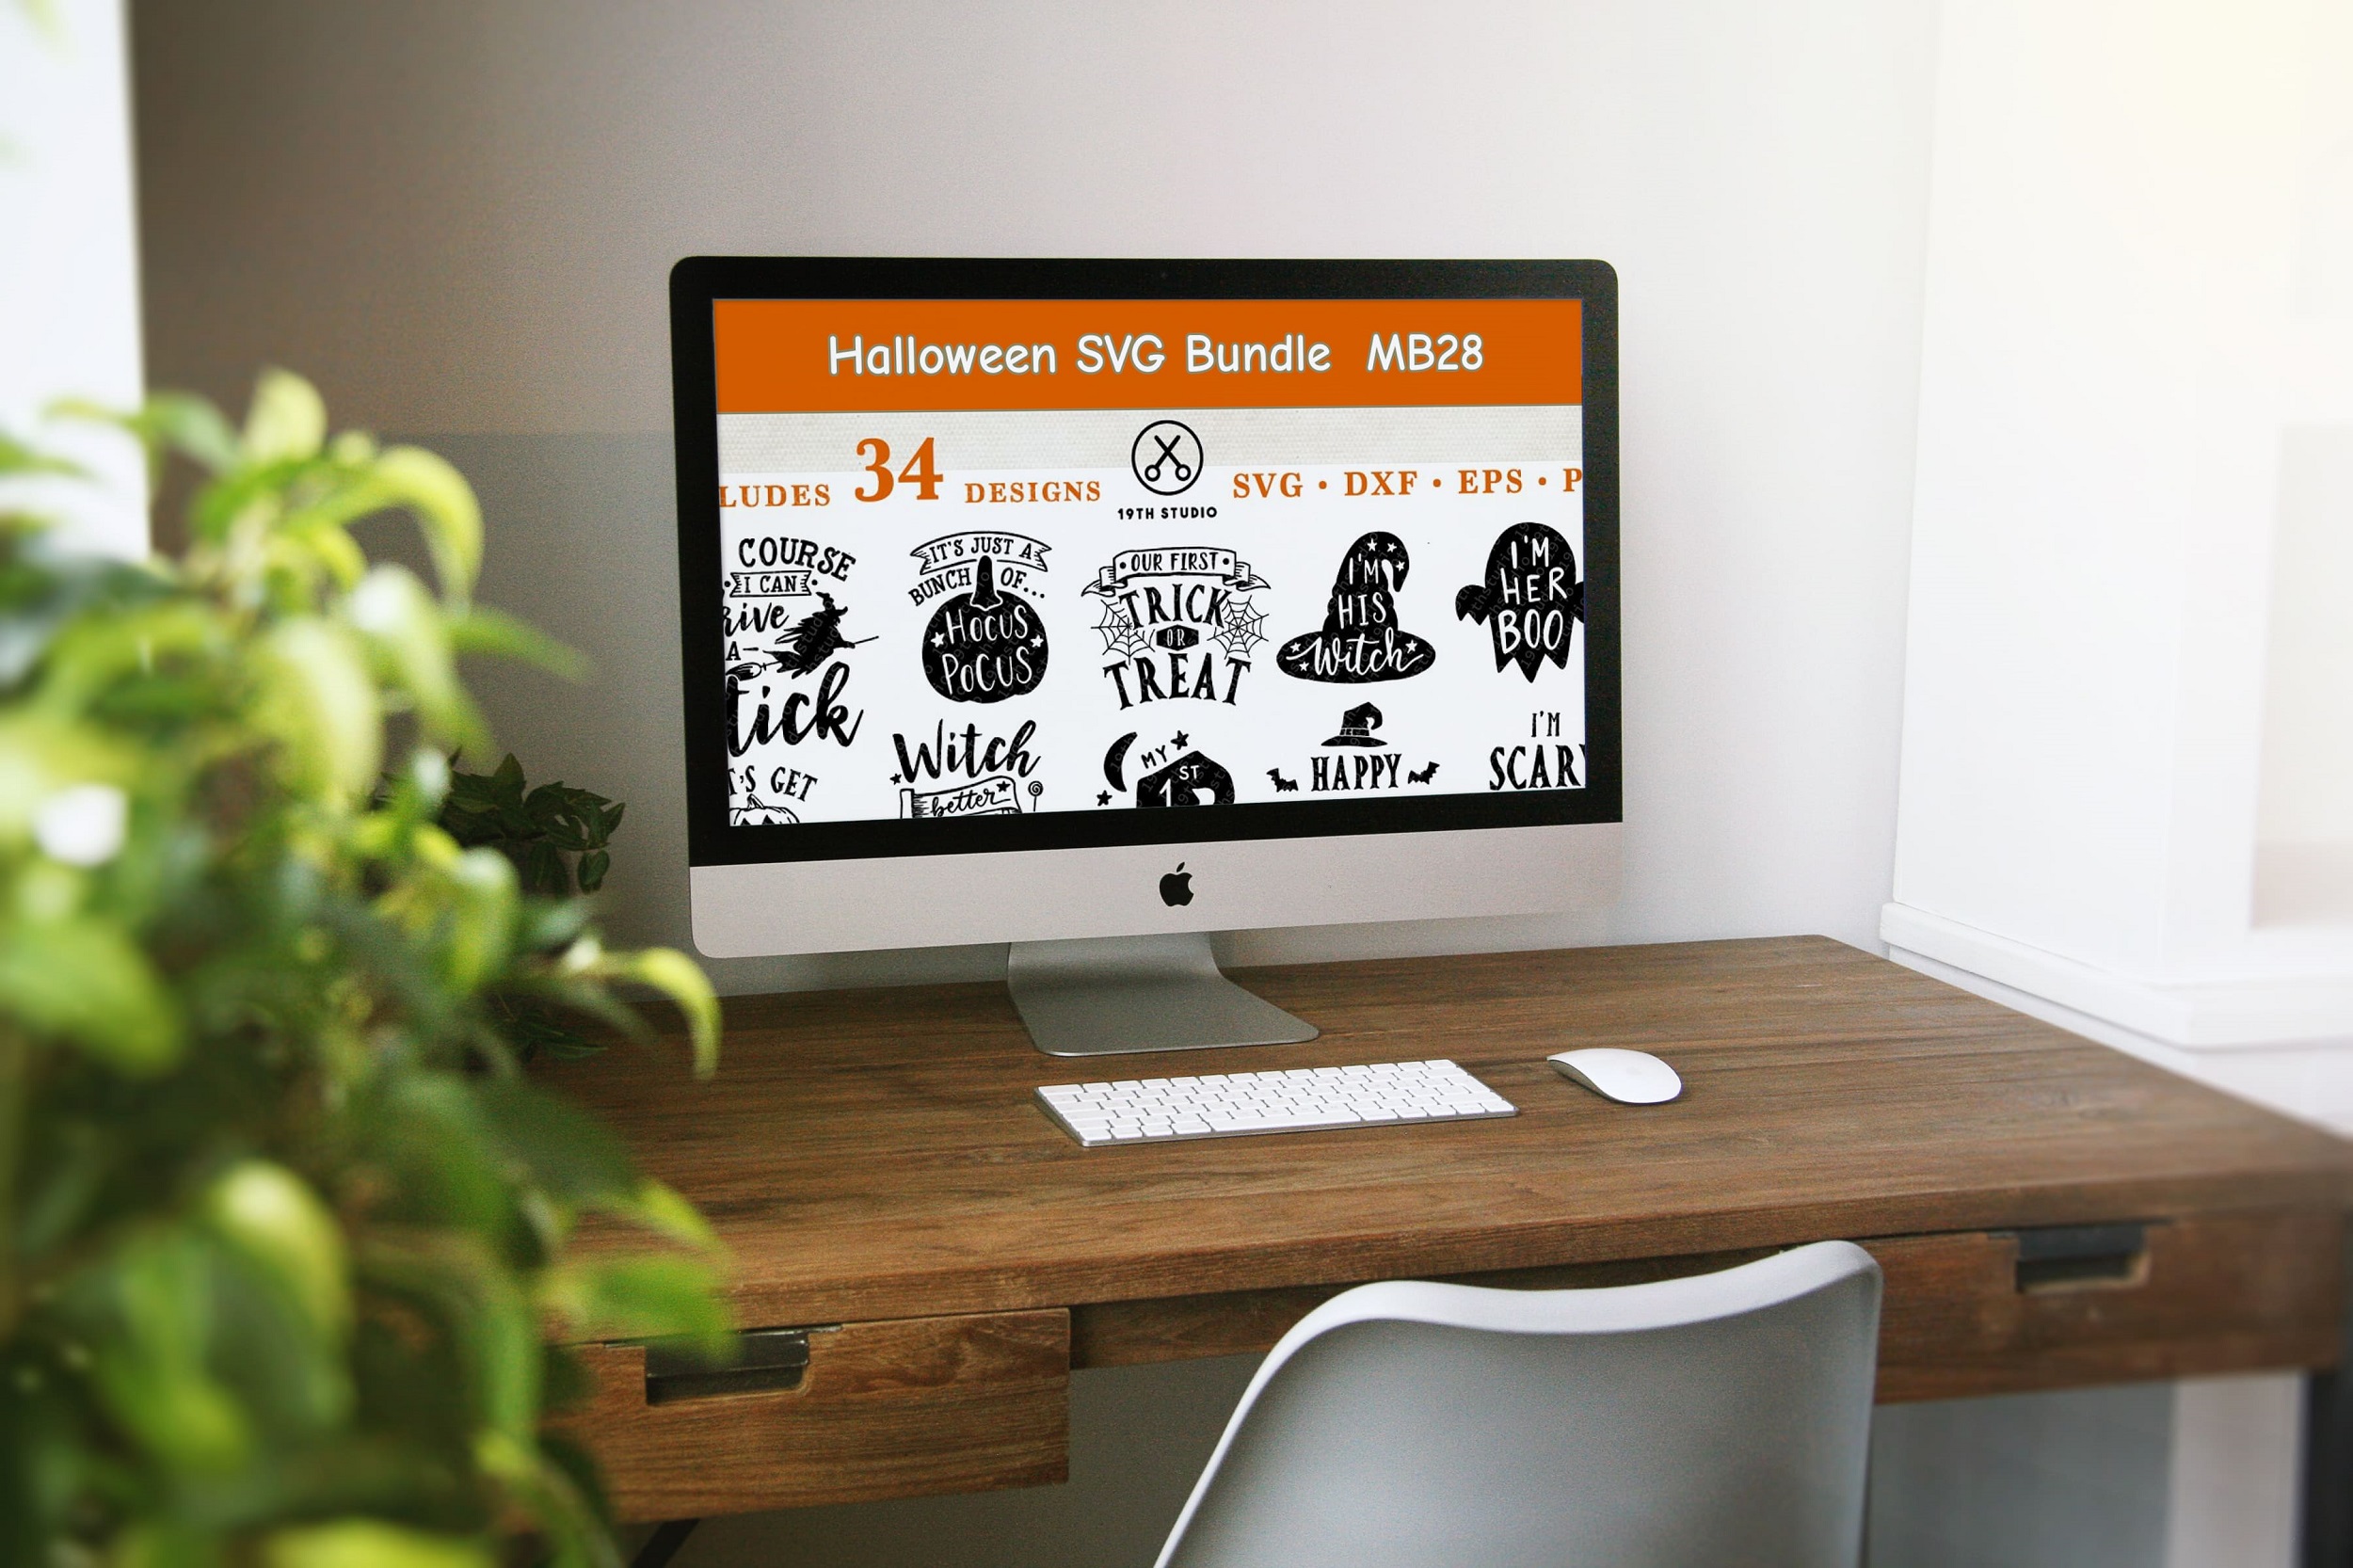 halloween svg bundle mb28 desktop mockup.